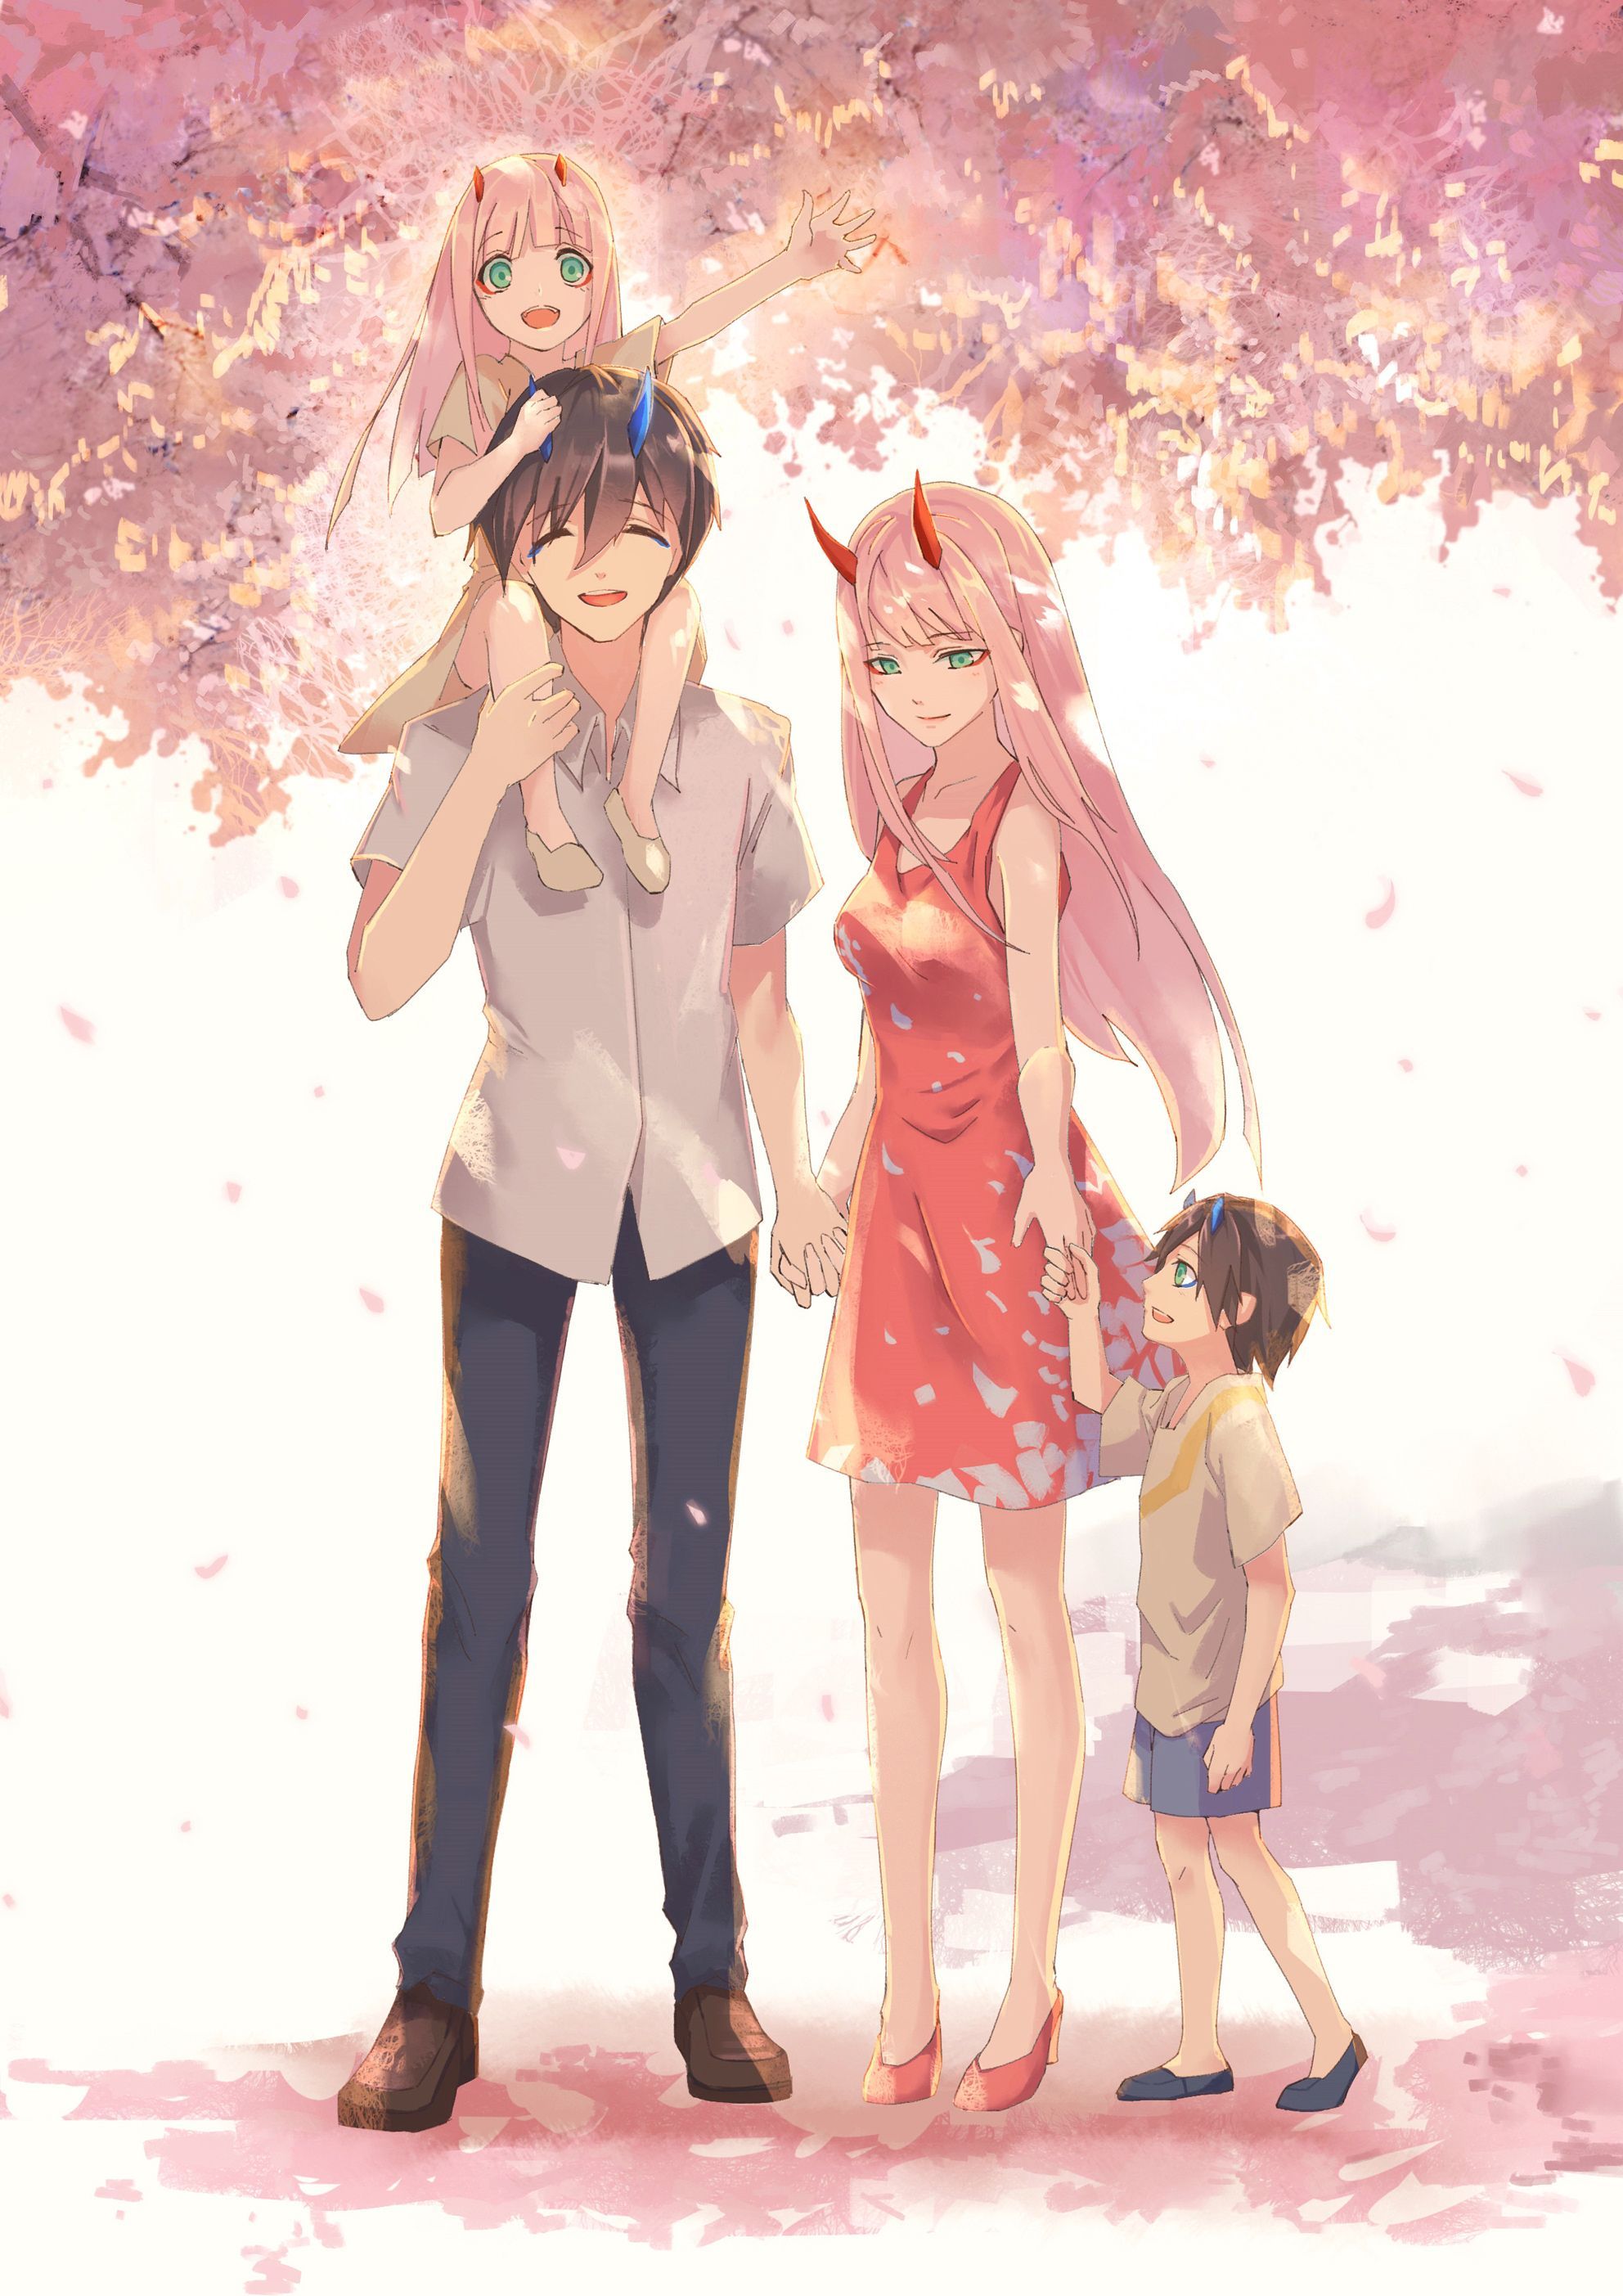 Hãy đón xem bức ảnh gia đình nhân vật anime trong không khí Tết sum vầy tươi vui! Bức ảnh sẽ mang đến cho bạn cảm giác ấm áp và yên bình của một đêm tết trọn vẹn cùng gia đình.